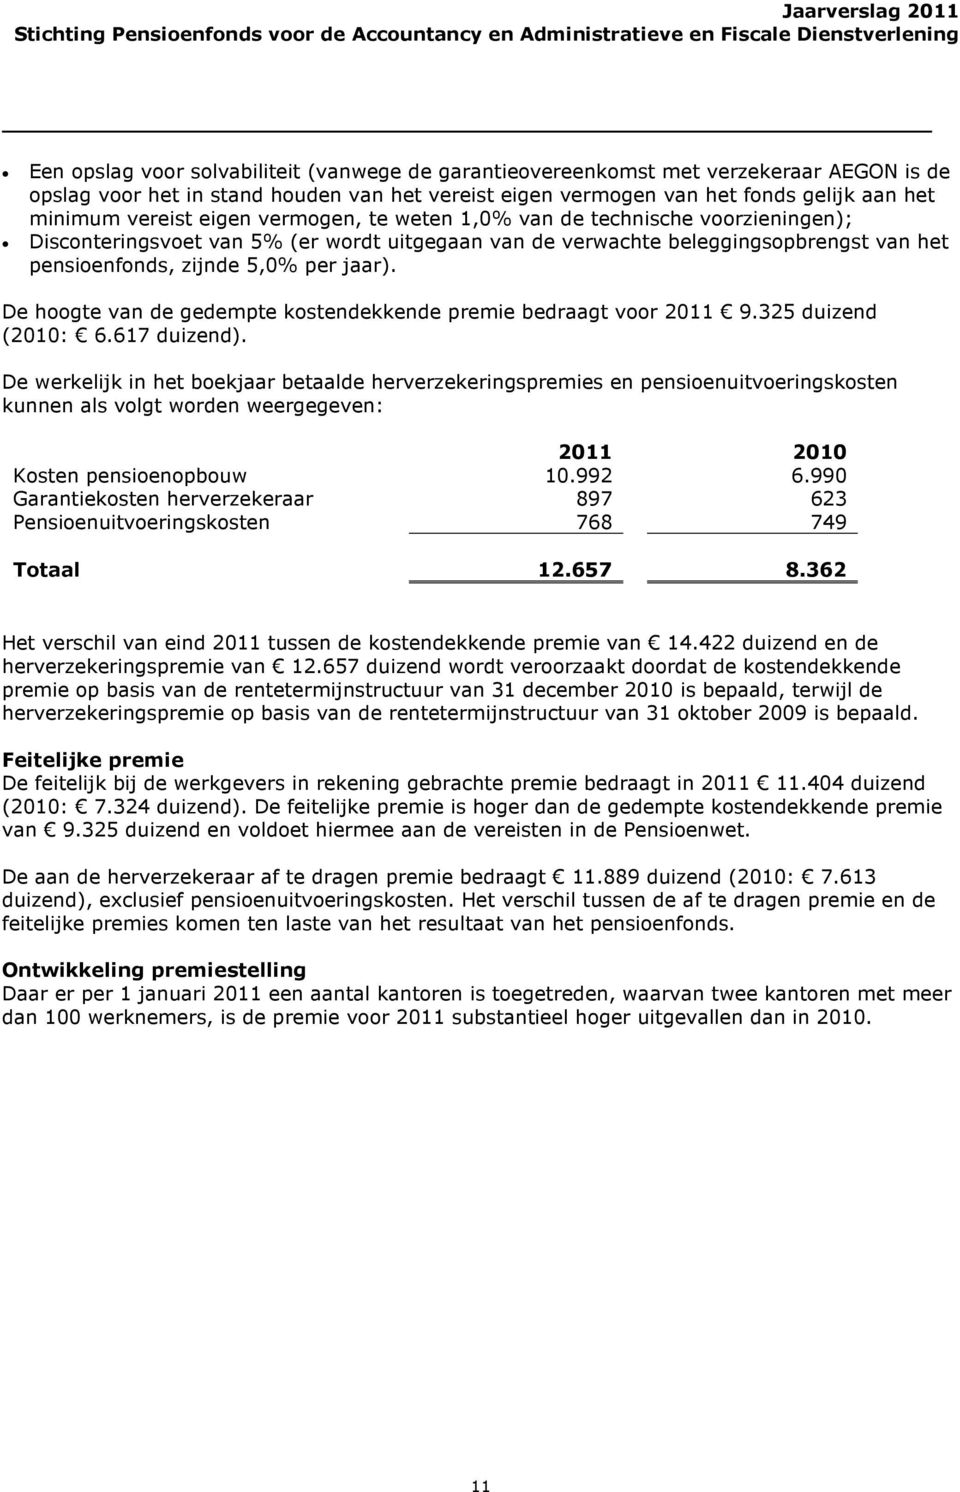 De hoogte van de gedempte kostendekkende premie bedraagt voor 2011 9.325 duizend (2010: 6.617 duizend).